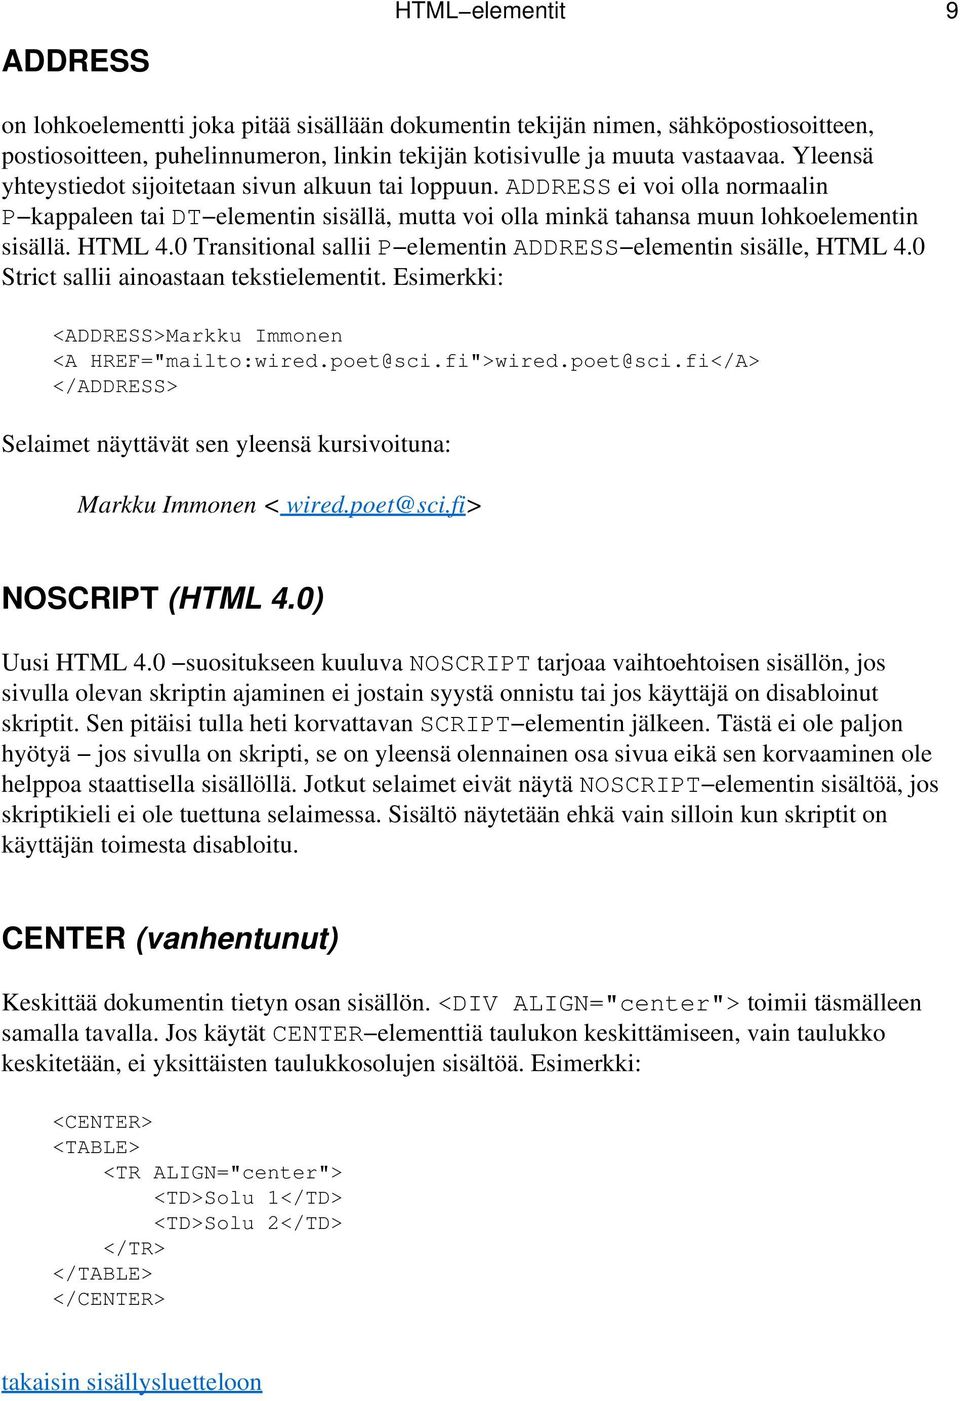 0 Transitional sallii P elementin ADDRESS elementin sisälle, HTML 4.0 Strict sallii ainoastaan tekstielementit. Esimerkki: <ADDRESS>Markku Immonen <A HREF="mailto:wired.poet@sci.